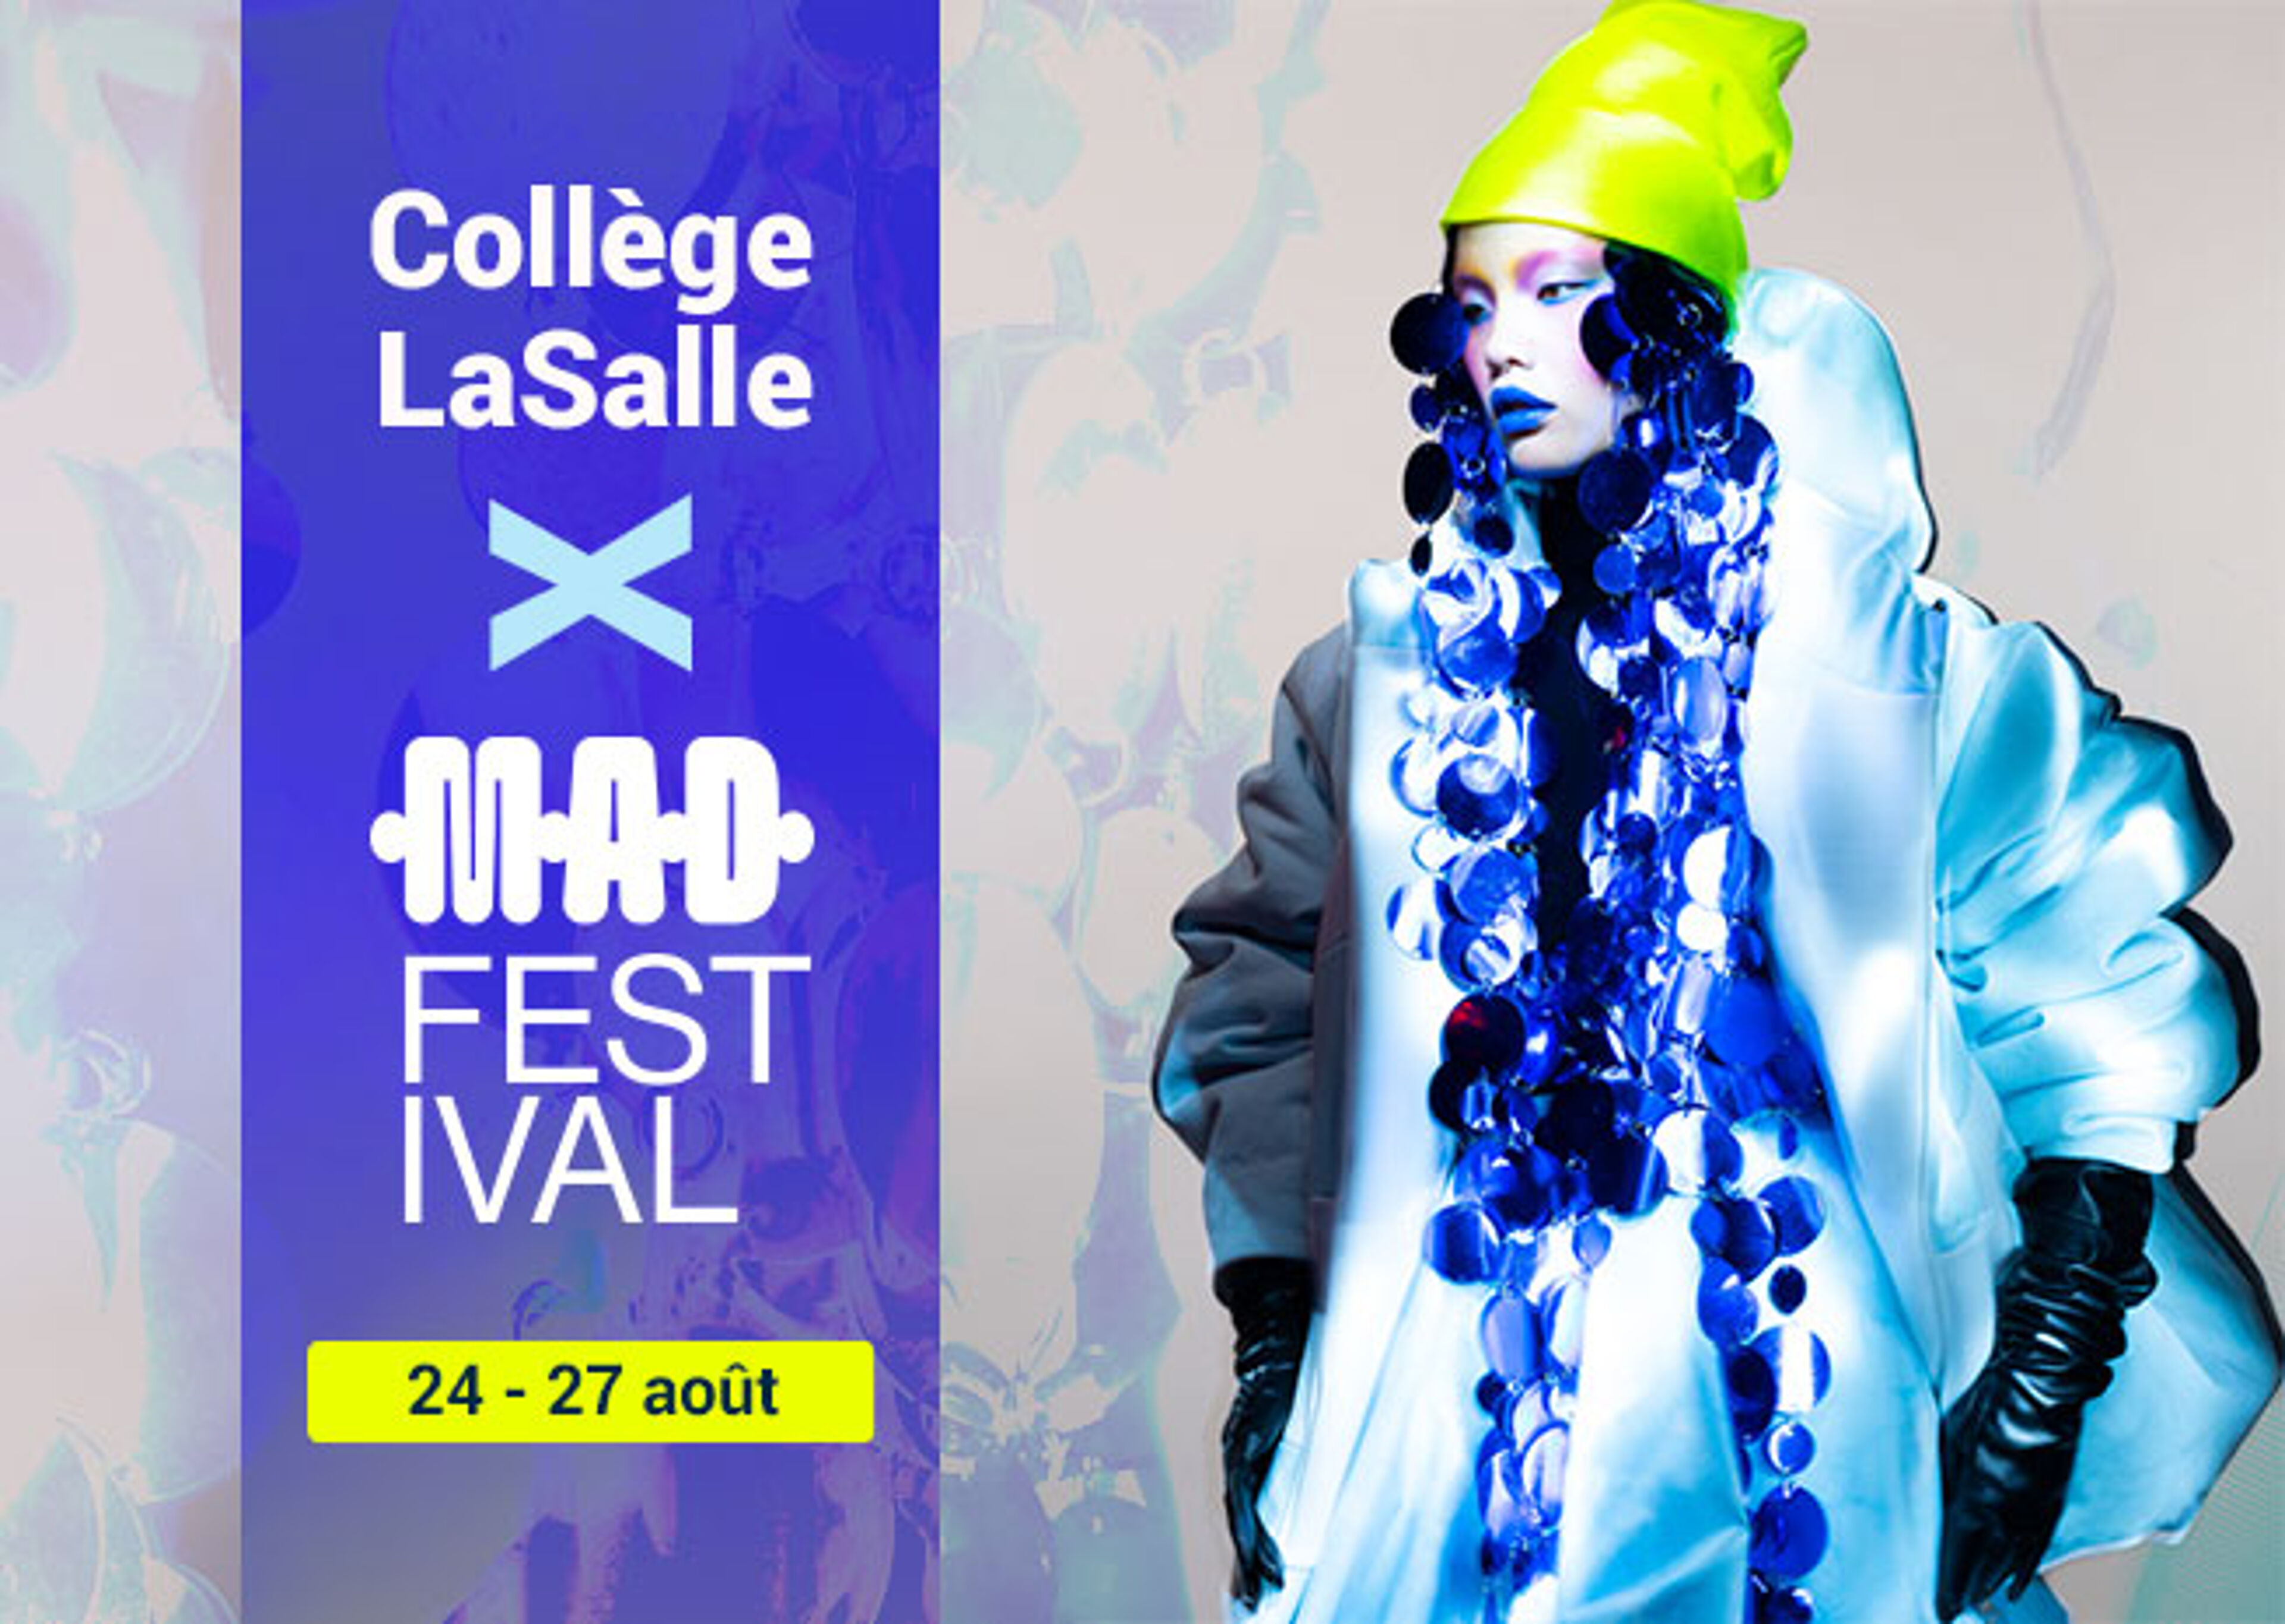 Publicité pour le festival de la mode du Collège LaSalle mettant en vedette un mannequin en tenue avant-gardiste.